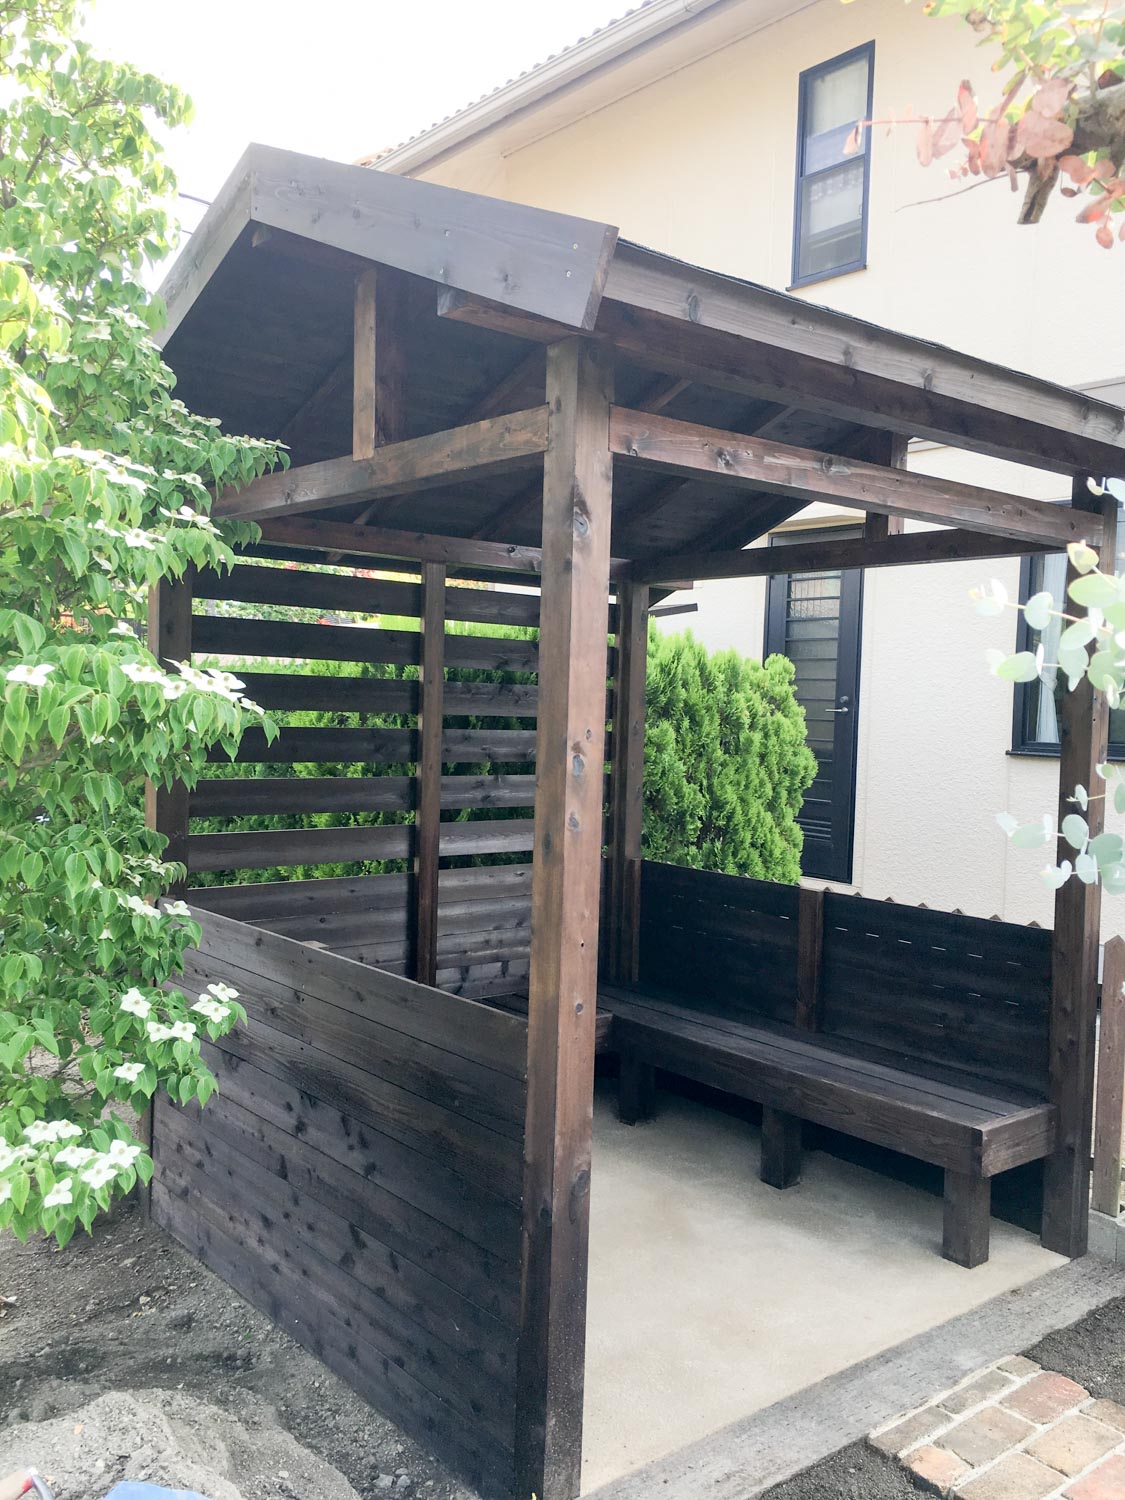 菜園の休憩所兼道具置き場としての庭小屋